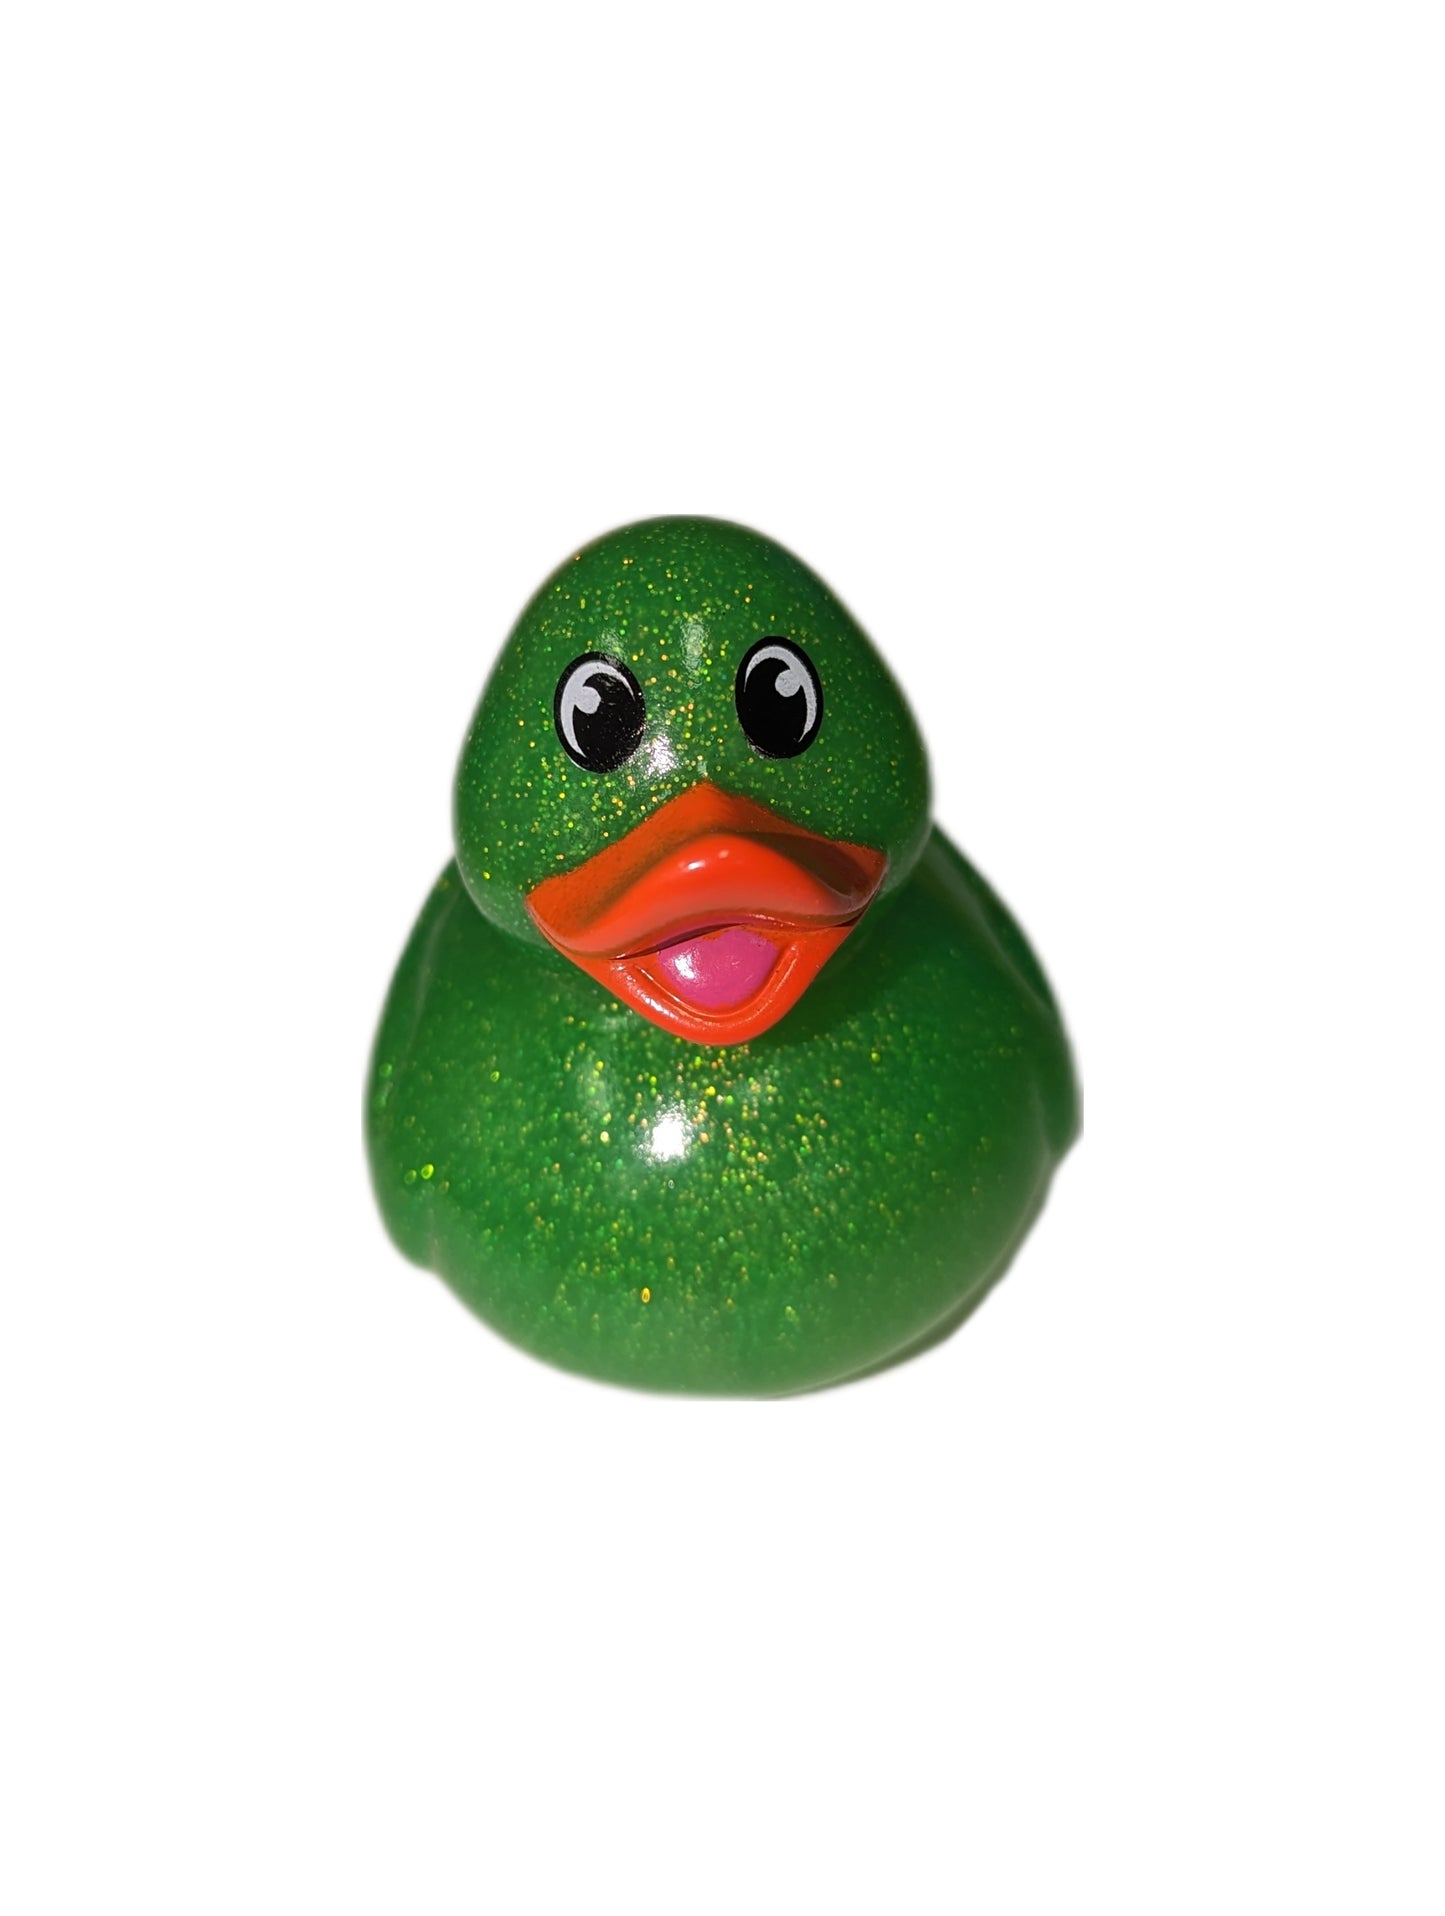 10 Green Glitter & Orange Beak Ducks - 2" Rubber Ducks